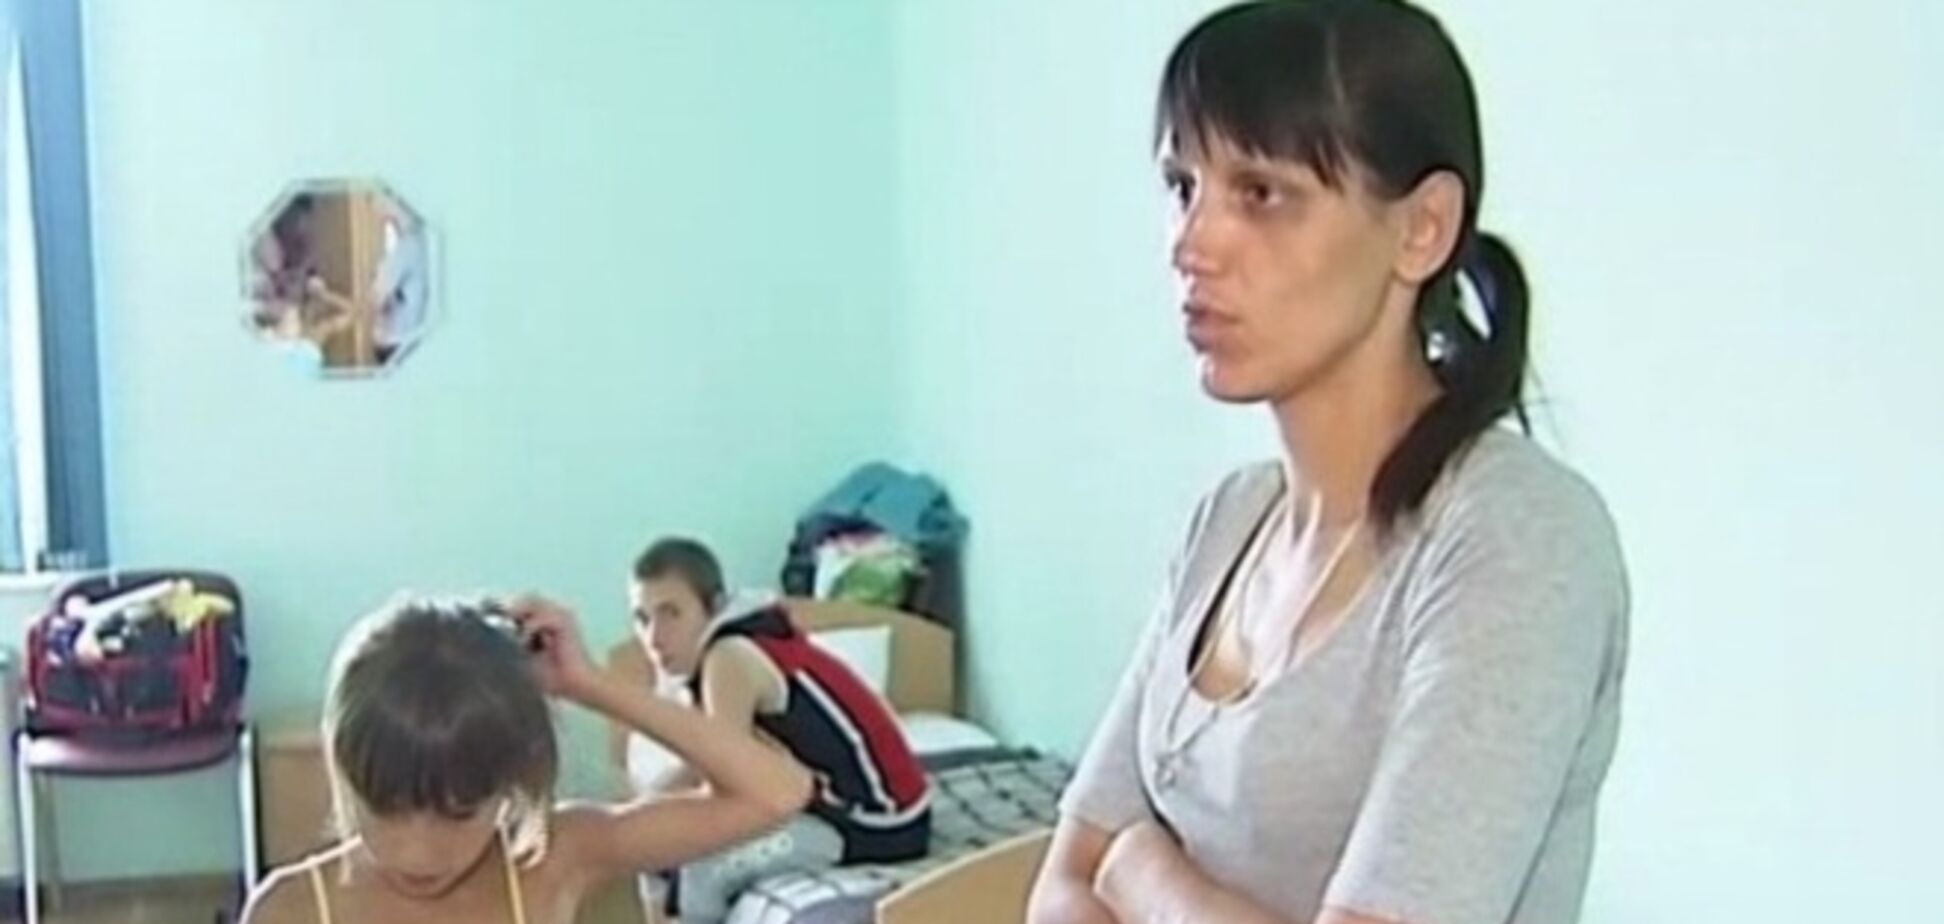 В Киеве закончилось жилье для поселения беженцев